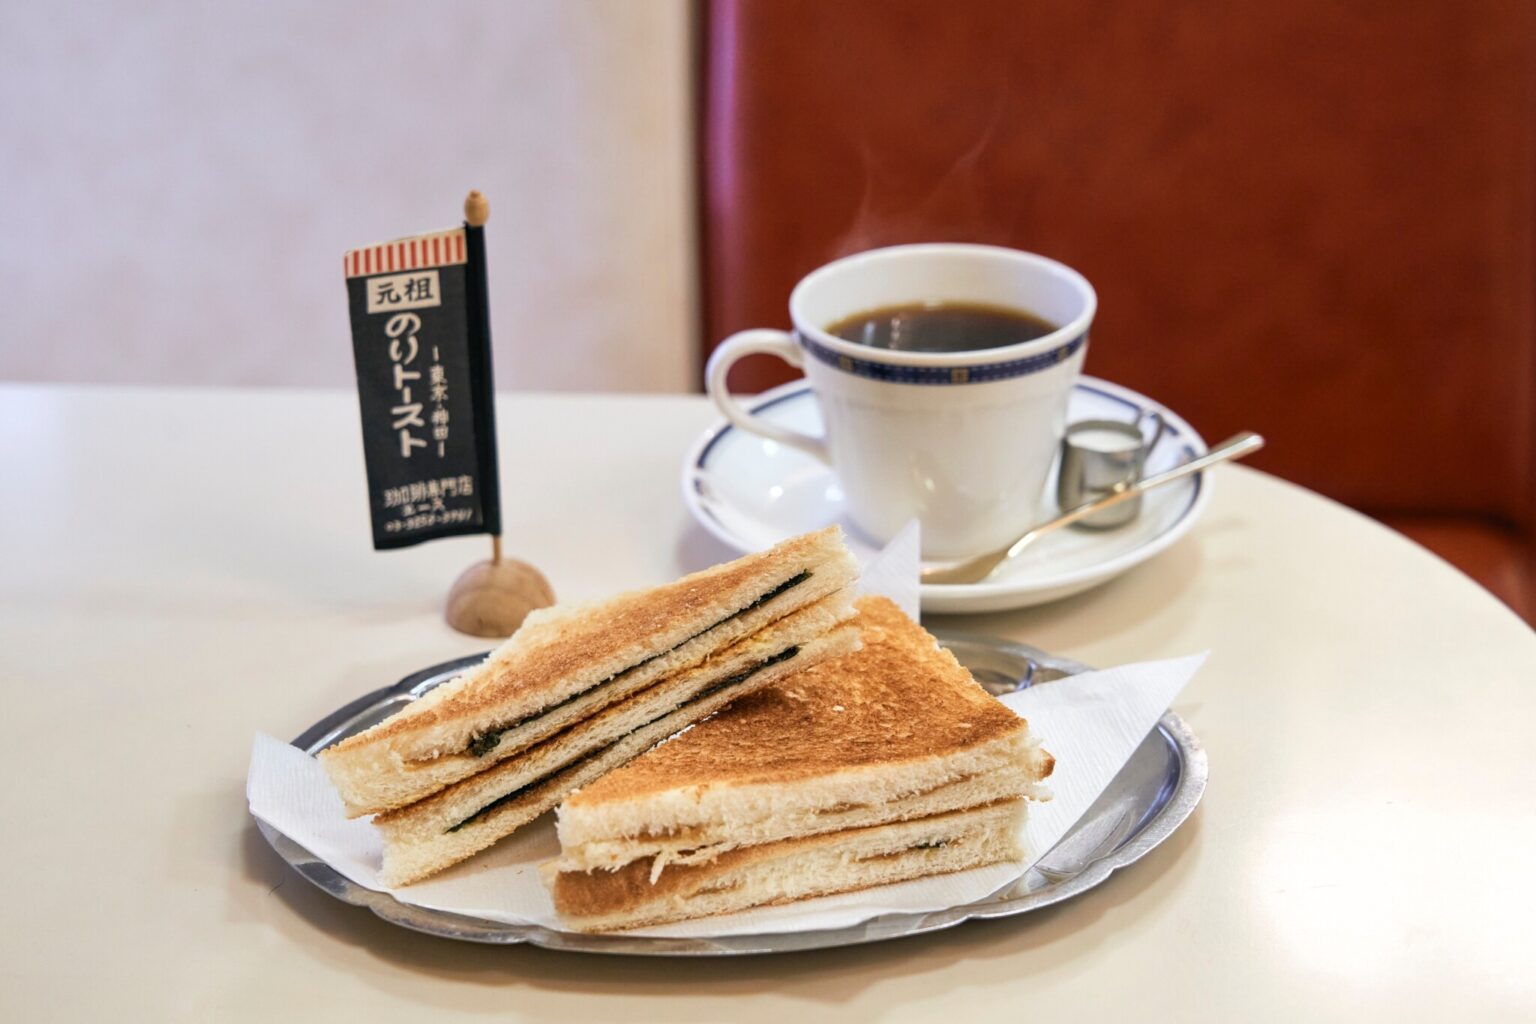 看板メニューの「のりトースト」は、のりと醤油、バターのシンプルで絶妙な味わい。ブレンドコーヒーとセットで570円のお得なモーニングサービスはおすすめ。